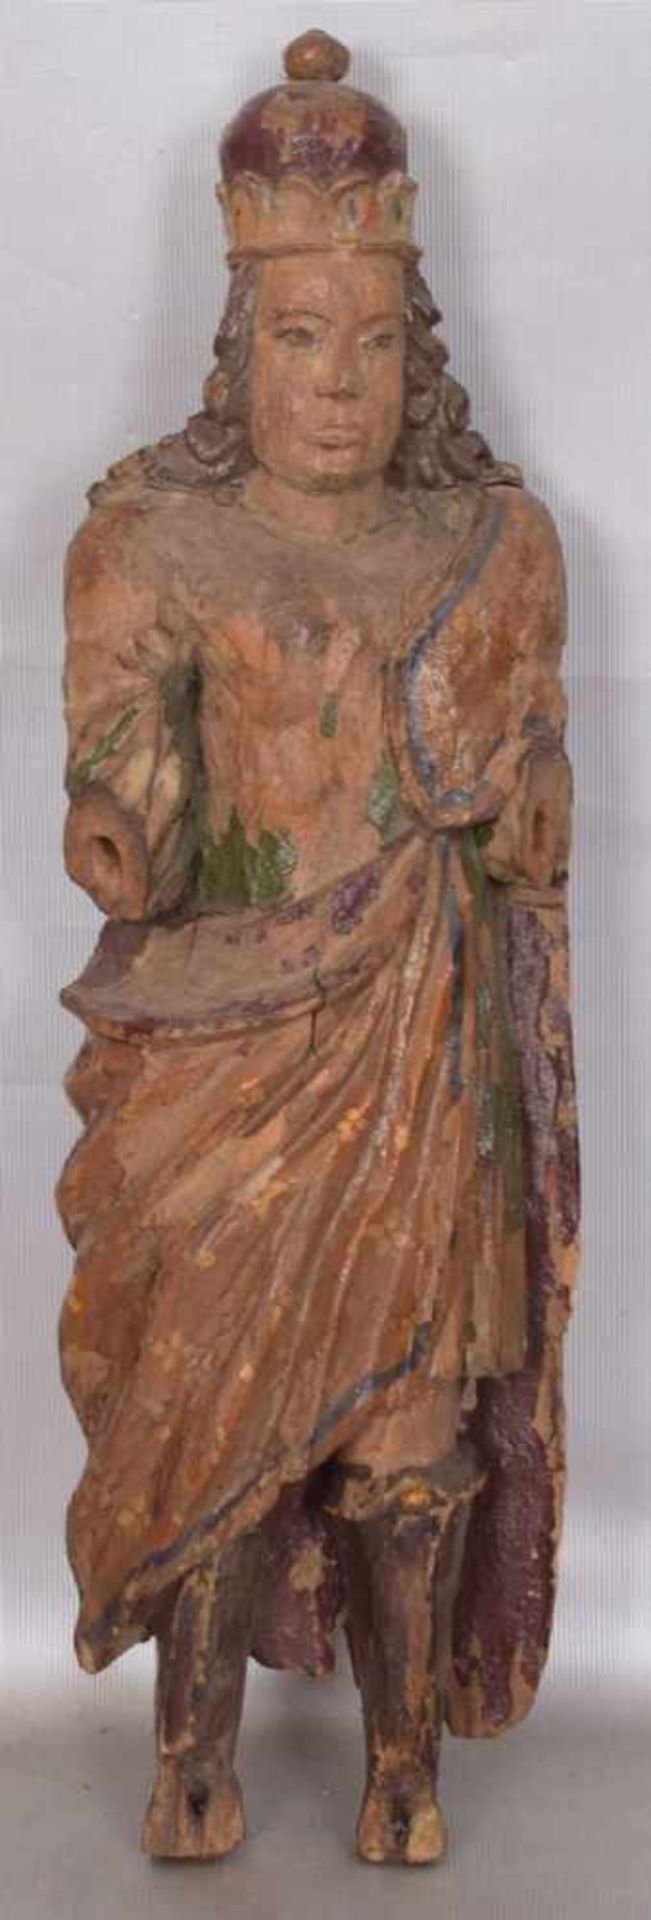 Darstellung eines KönigsHartholz, geschnitzt, Arme und Beine fehlen, Reste alter Fassung, H 39 cm,